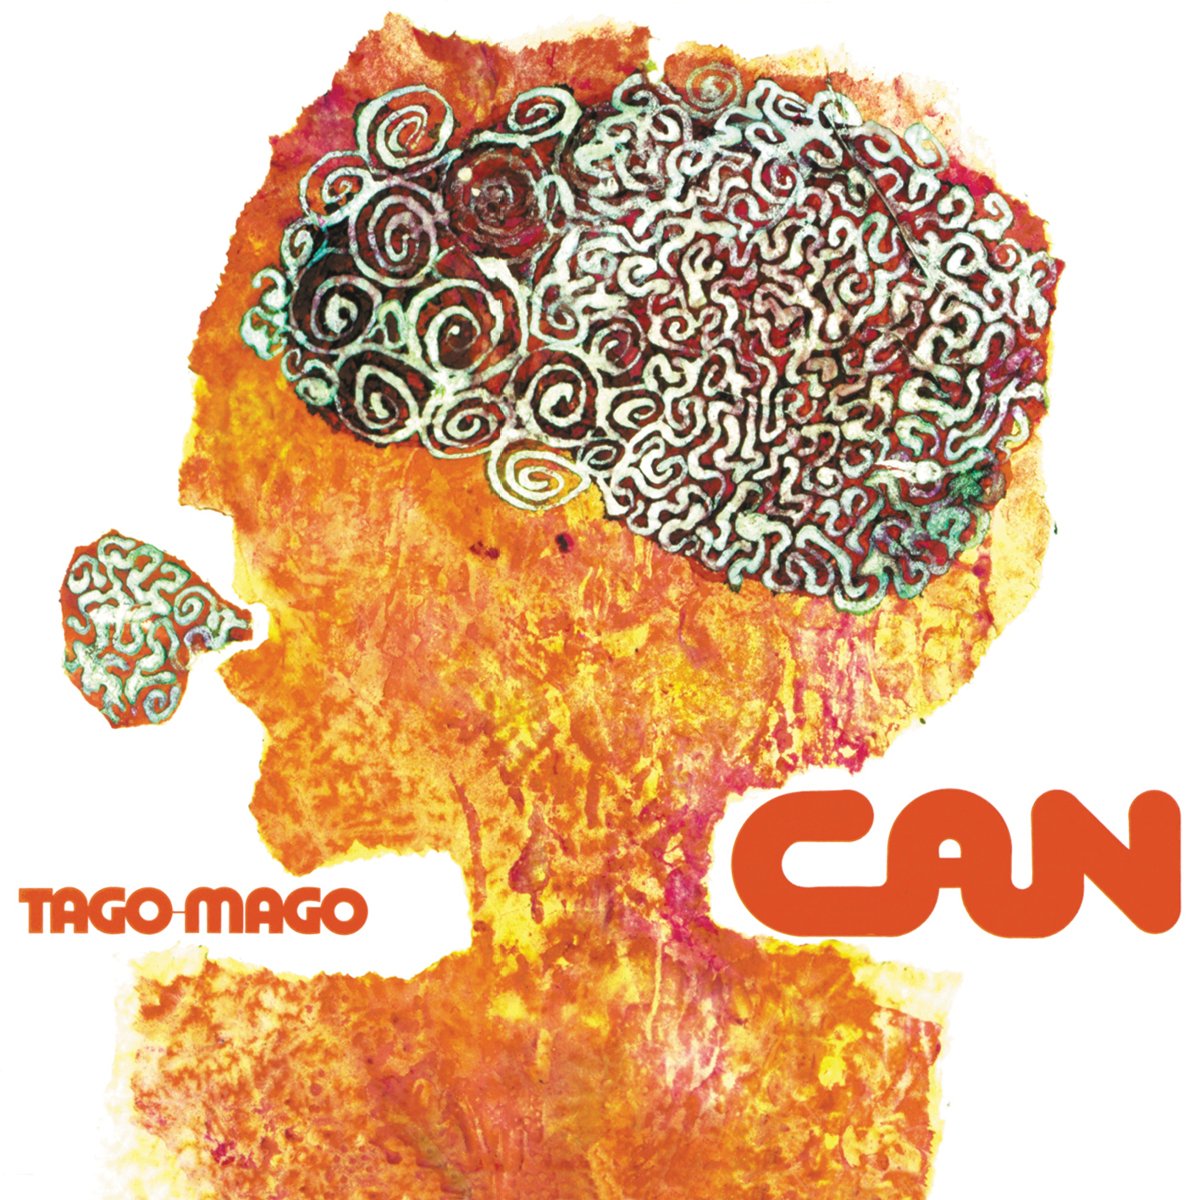 
                  
                    CAN - Tago Mago
                  
                